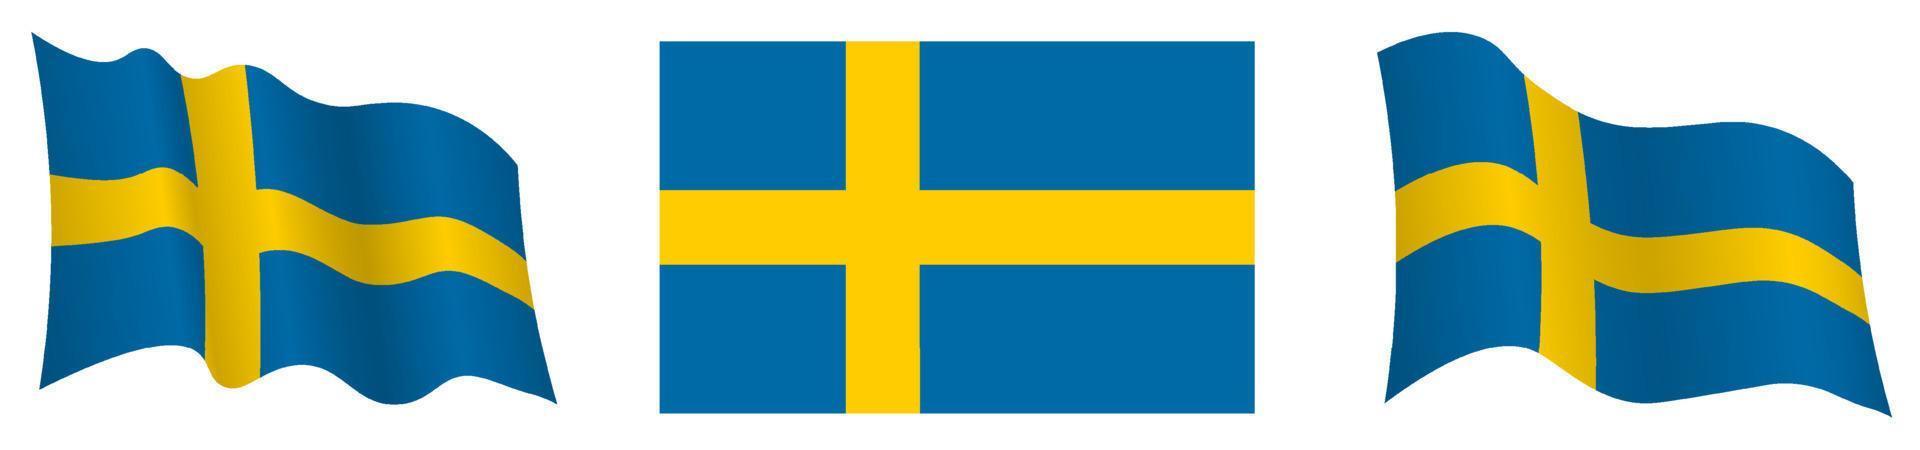 drapeau suédois en position statique et en mouvement, se développant au vent dans des couleurs et des tailles exactes, sur fond blanc vecteur